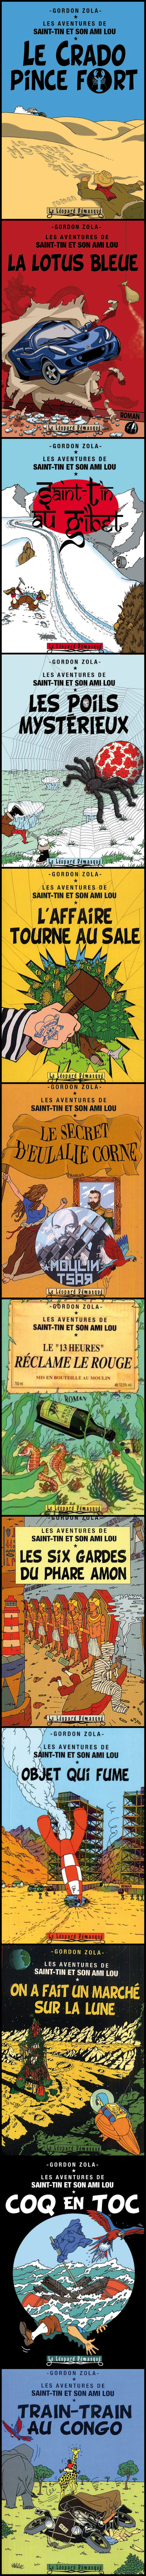 Série romanesque, parodie et pastiche de la bande dessinée Tintin et Milou de Hergé, crée par Gordon Zola (Eric Mogis) et complétée par Bob Garcia et Pauline Bonnefoi.